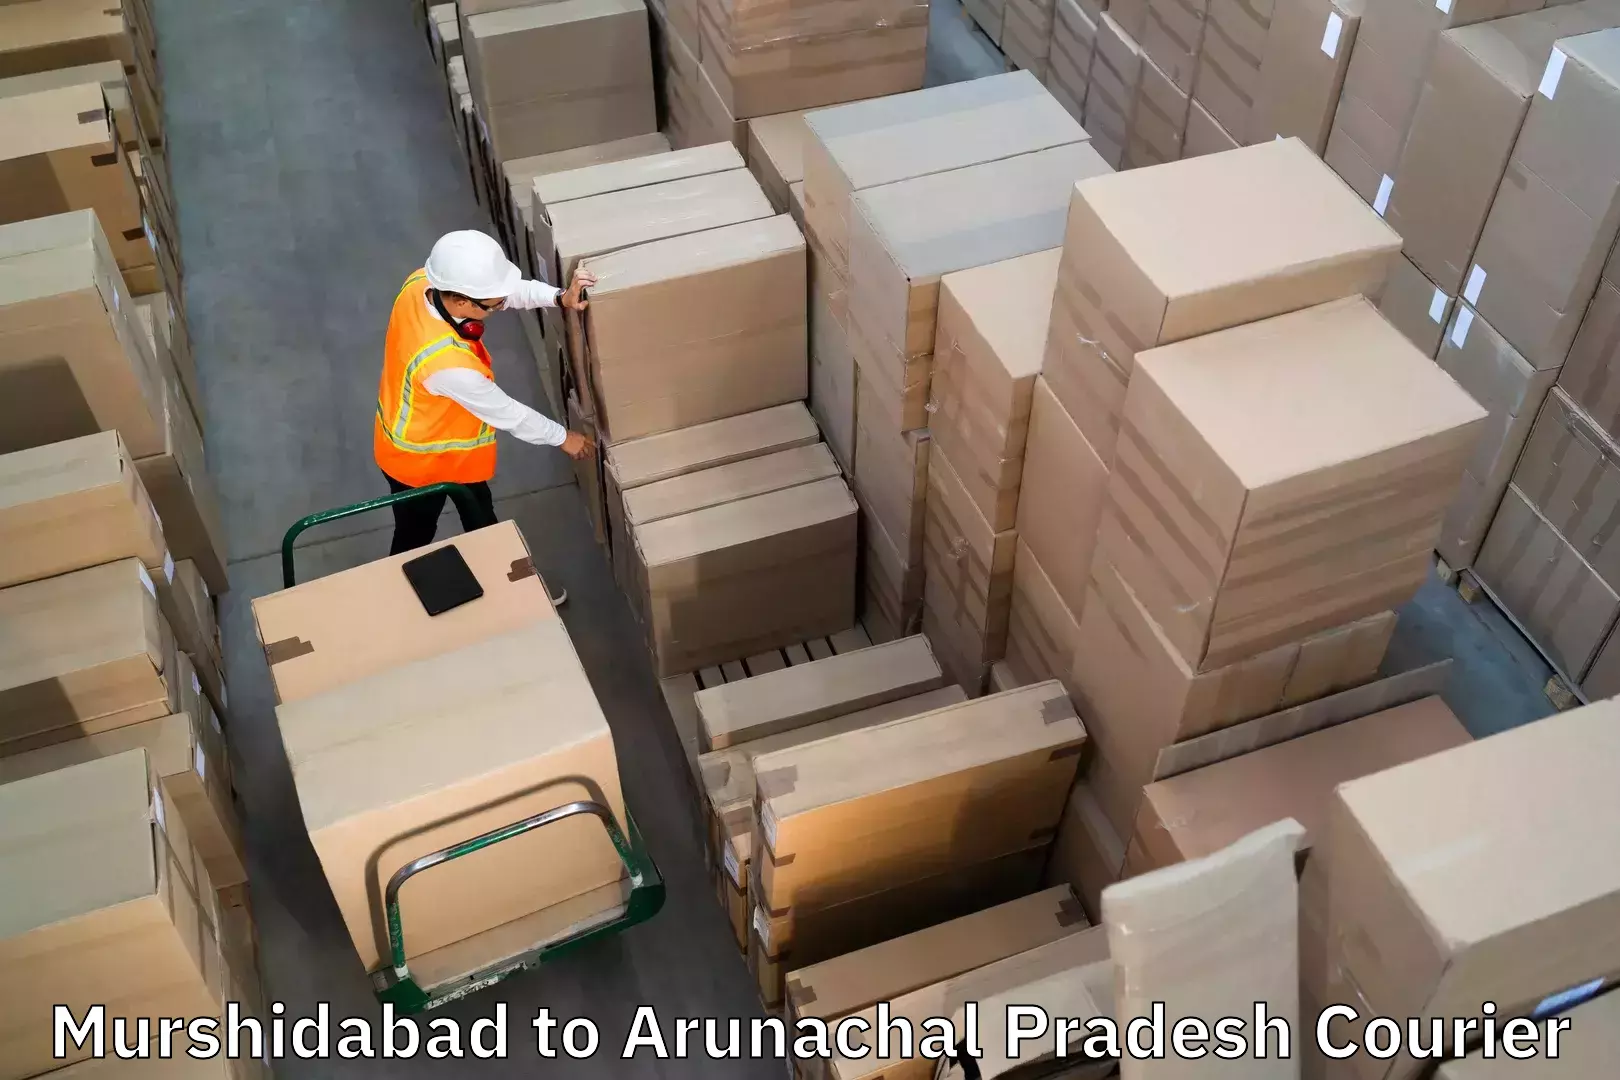 Luggage shipment specialists Murshidabad to Chowkham